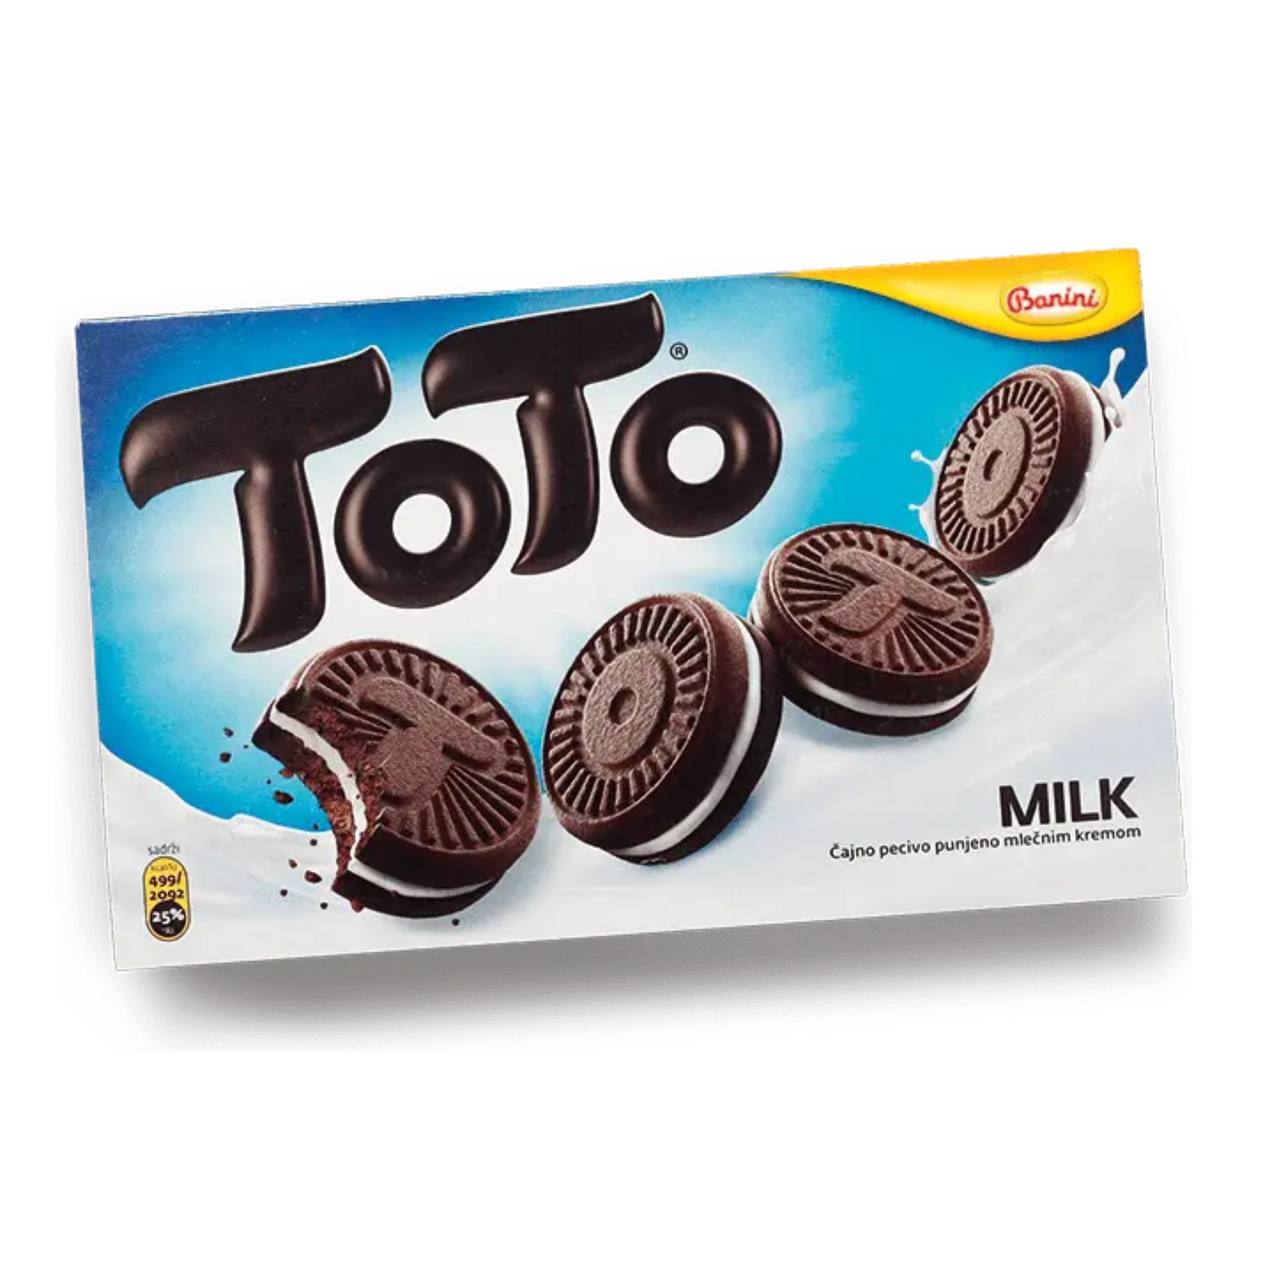 Печенье Banini Toto Milk с молочной начинкой, 220 г